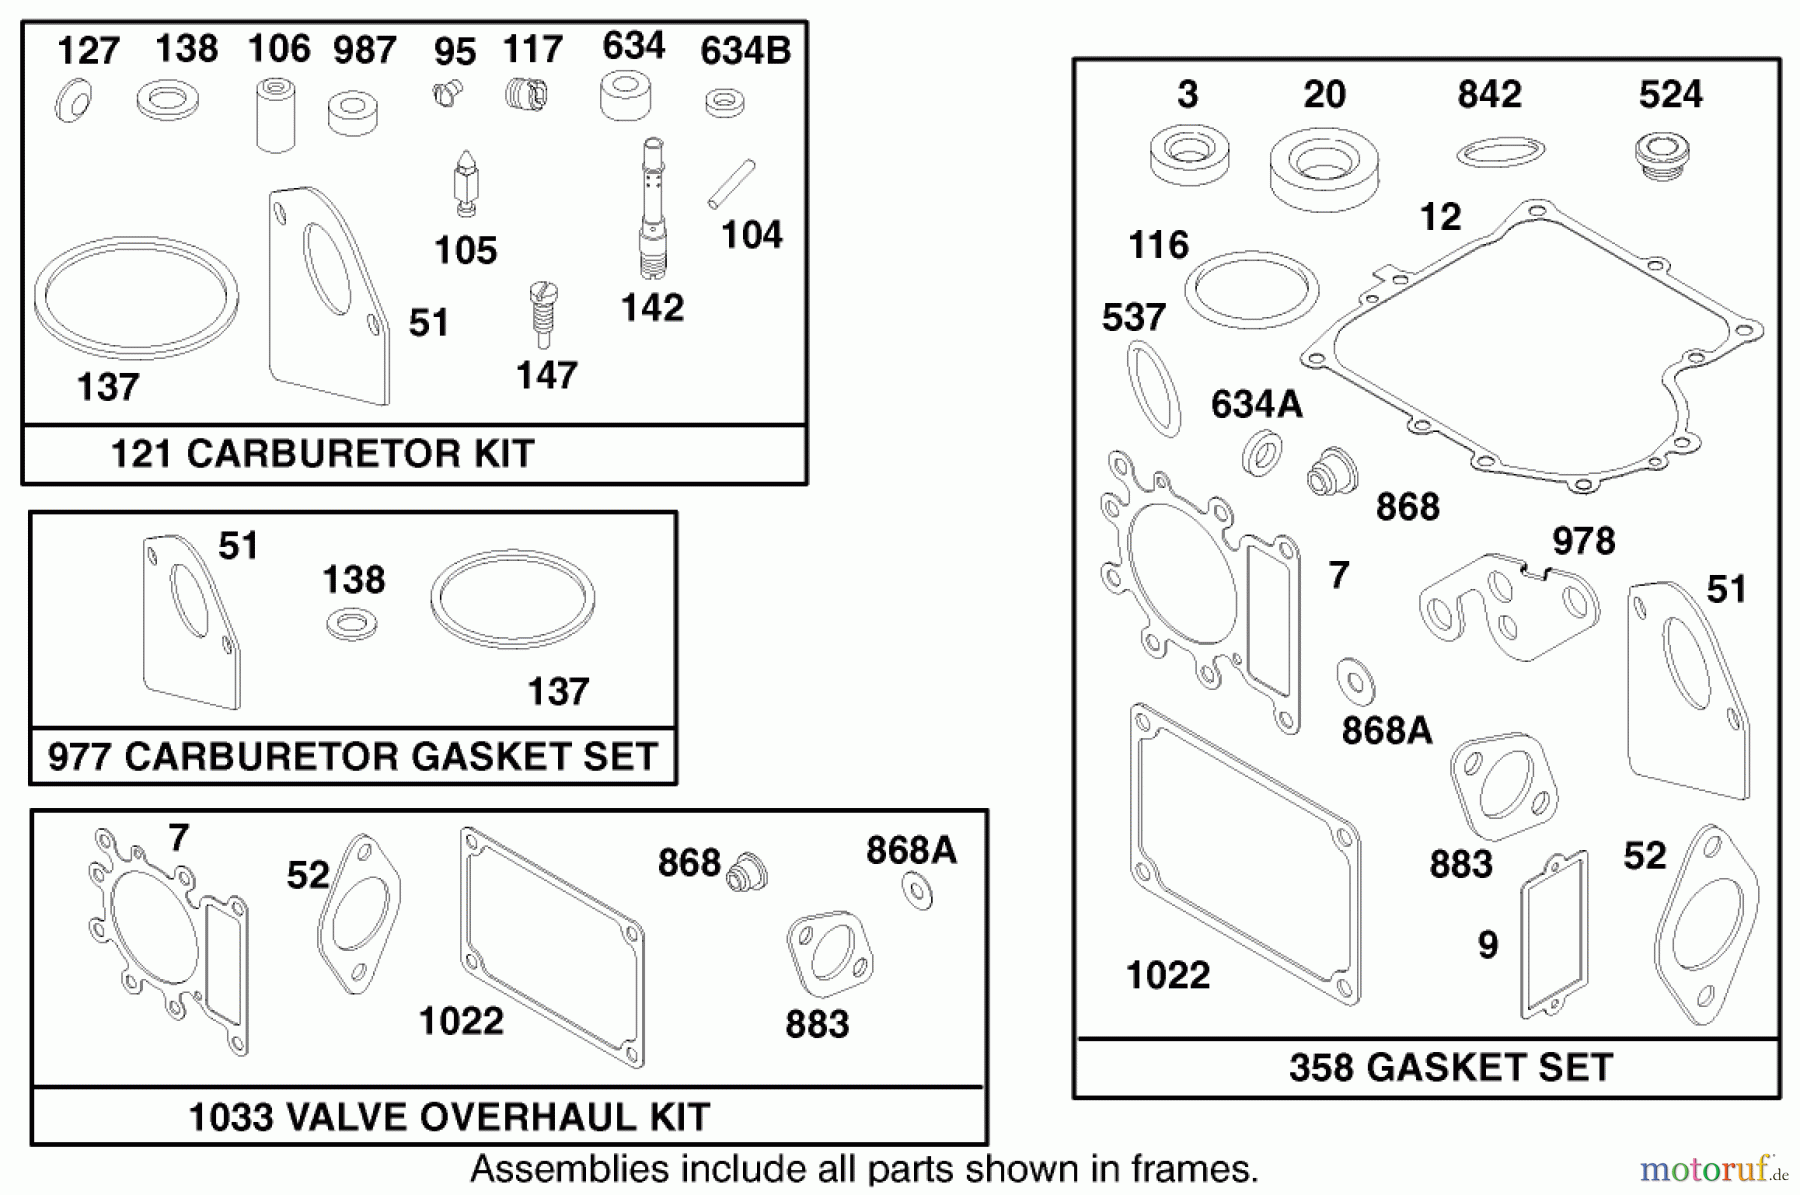  Toro Neu Mowers, Lawn & Garden Tractor Seite 1 71196 (16-44HXL) - Toro 16-44HXL Lawn Tractor, 1997 (7900001-7999999) ENGINE BRIGGS & STRATTON MODEL 28Q777-0668-A1 #10